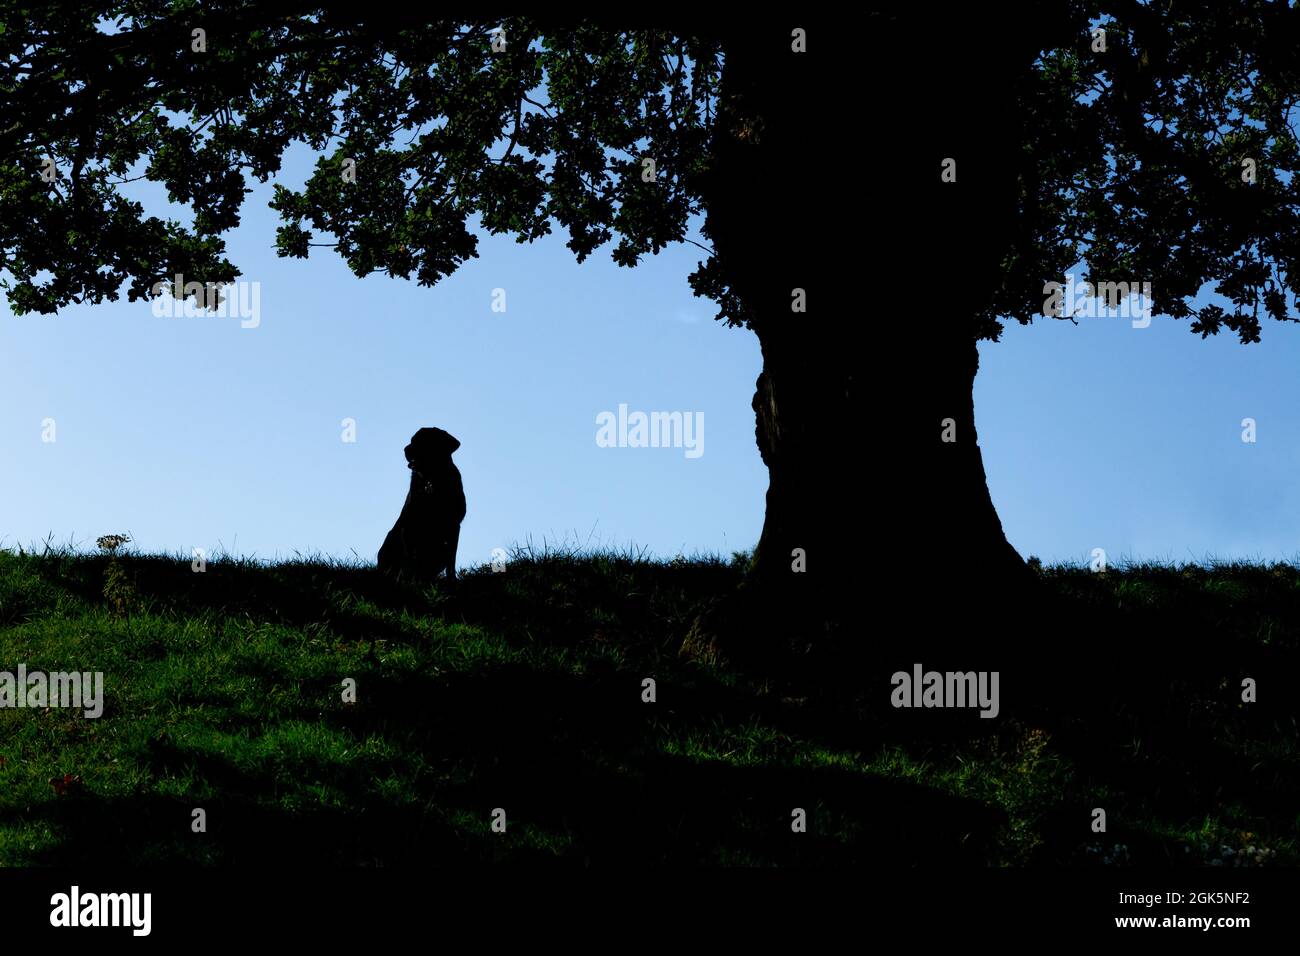 Un Labrador noir assis sous un vieux chêne anglais. La forme du chien est silhouetée contre le ciel. Banque D'Images